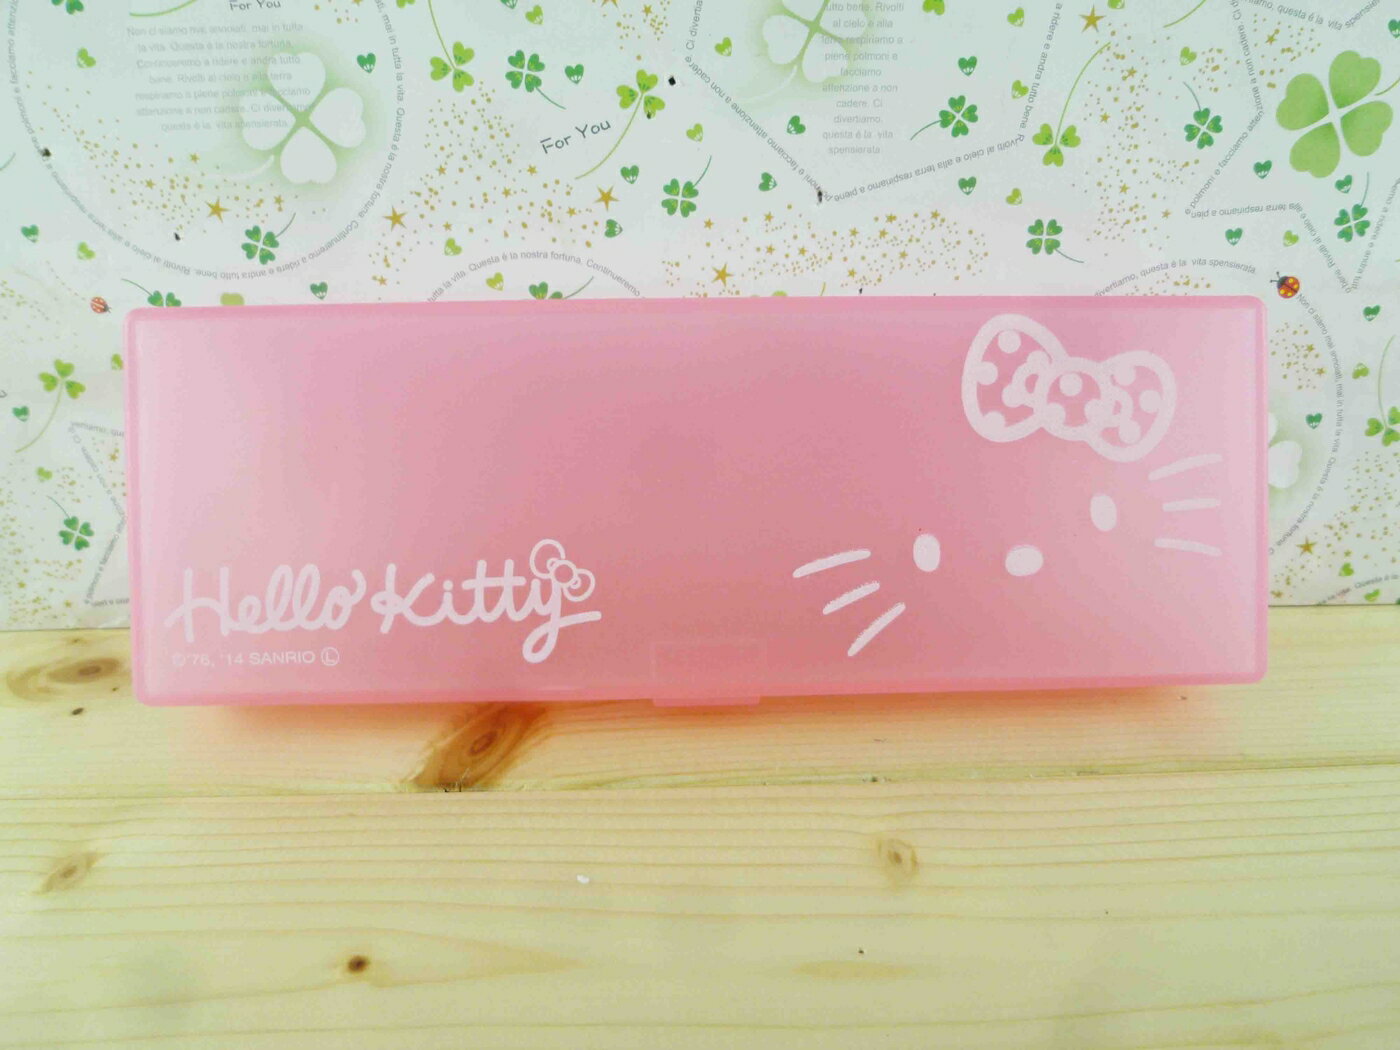 【震撼精品百貨】Hello Kitty 凱蒂貓 KITTY鉛筆盒-大頭圖案-粉色 震撼日式精品百貨